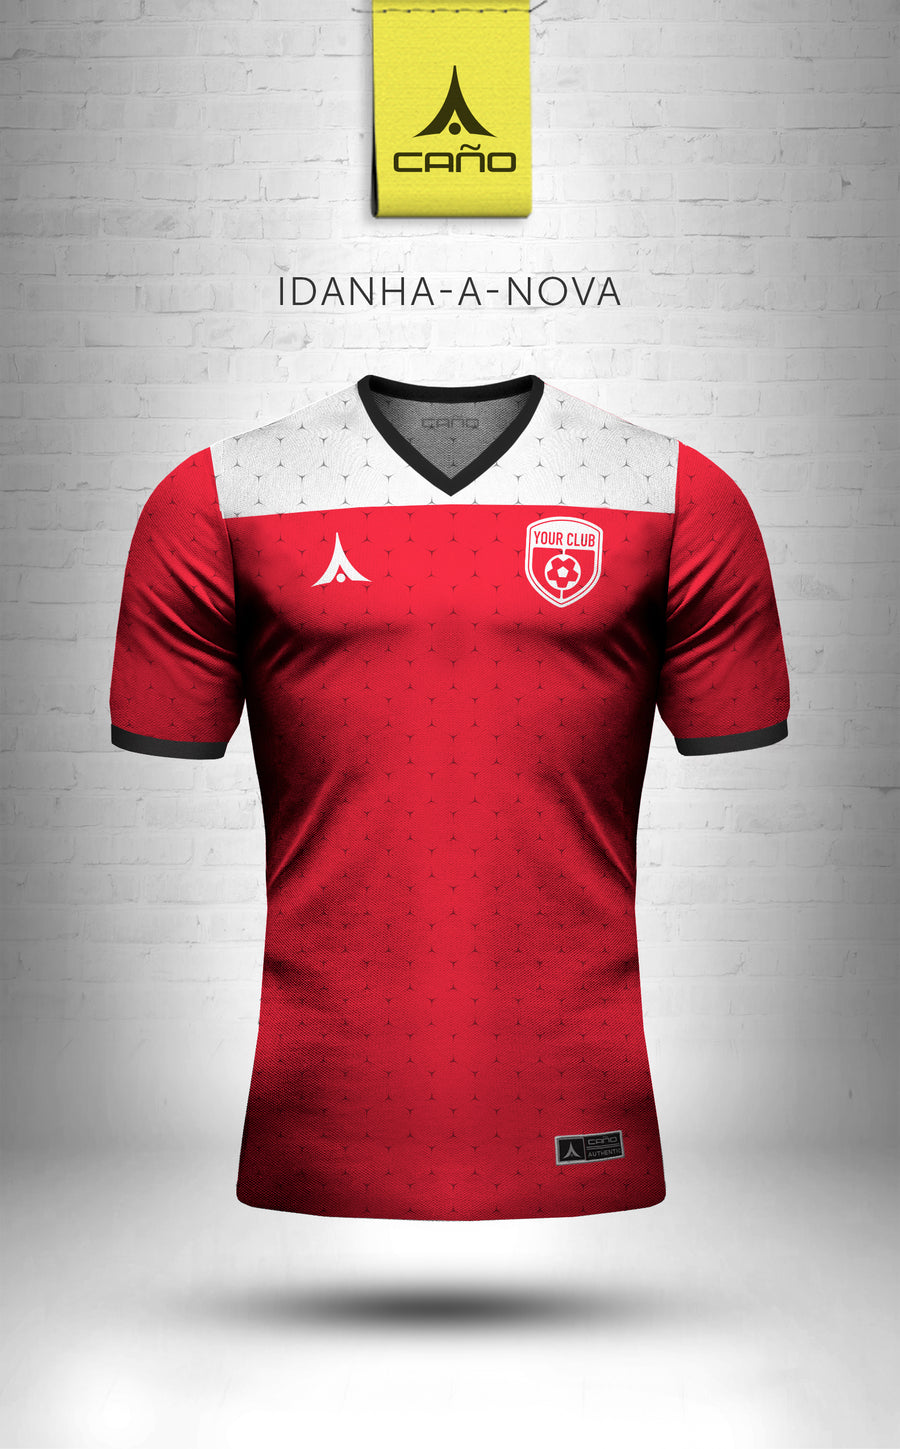 Idanha-a-Nova in red/black/white